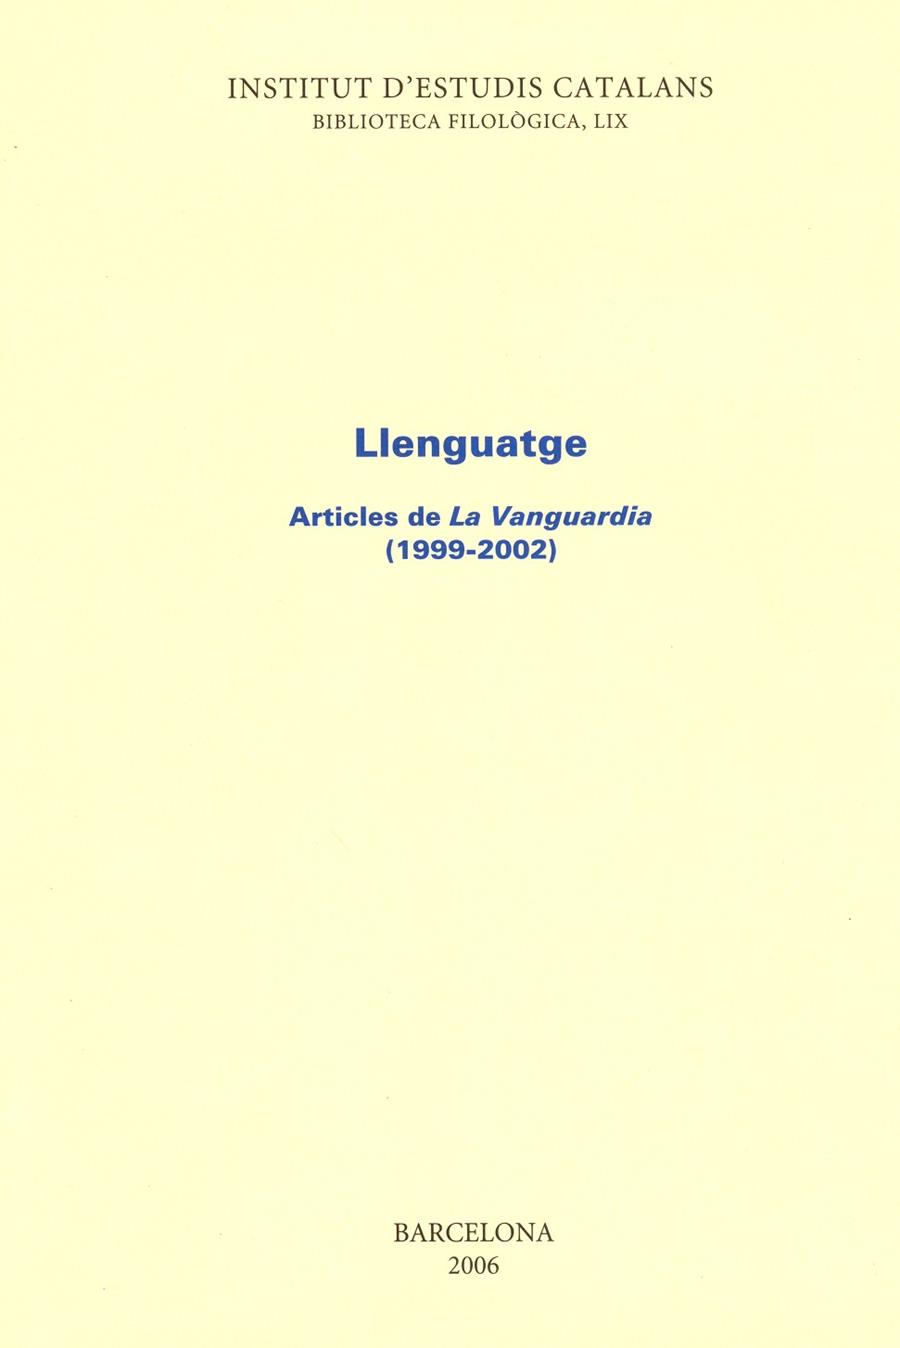 LLENGUATGE. ARTICLES DE LA VANGUARDIA (1999-2002) | 9788472838956